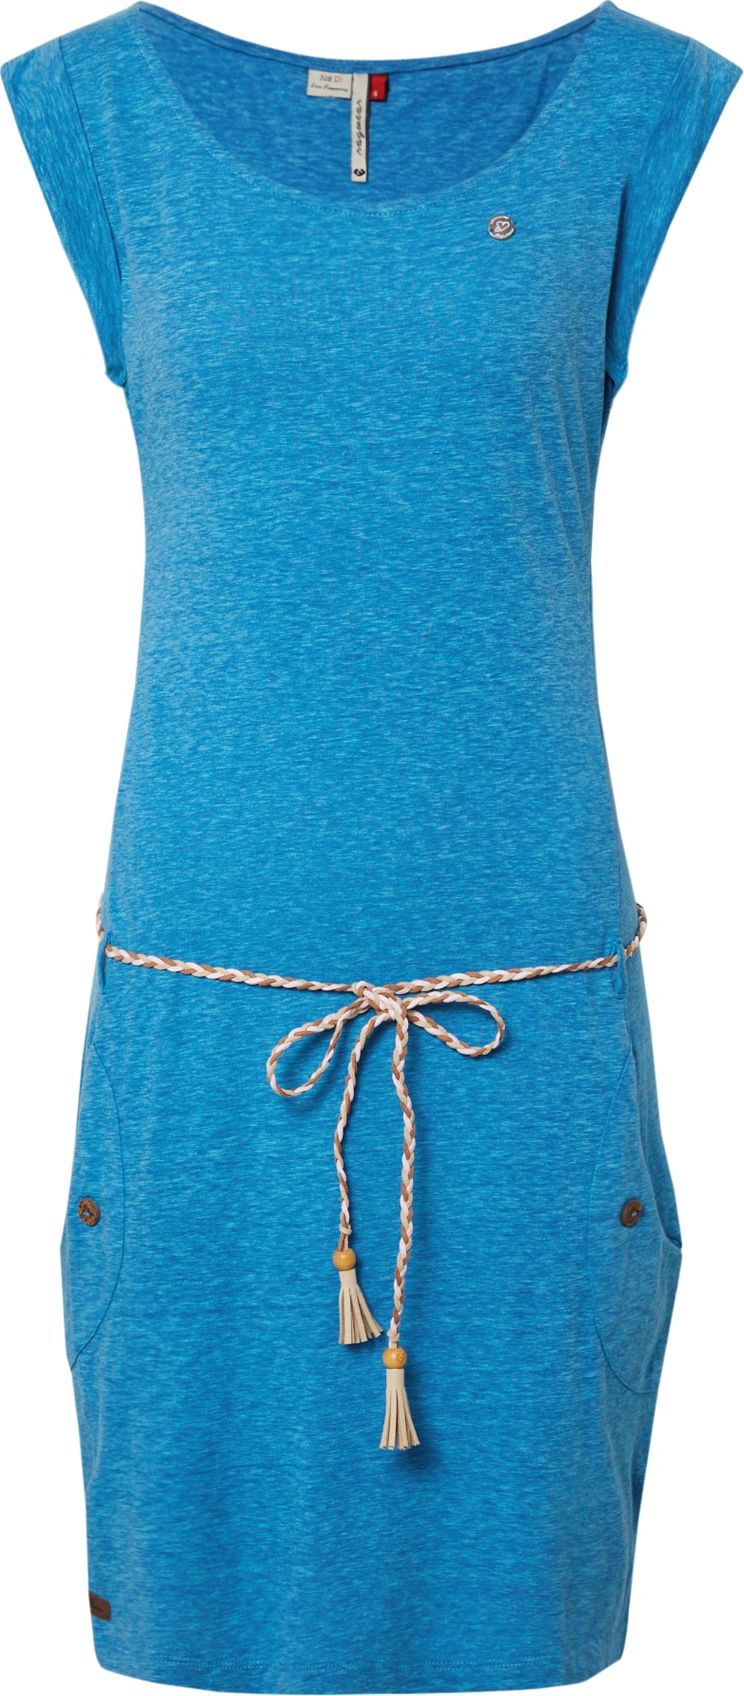 Ragwear Letní šaty 'Tag' nebeská modř